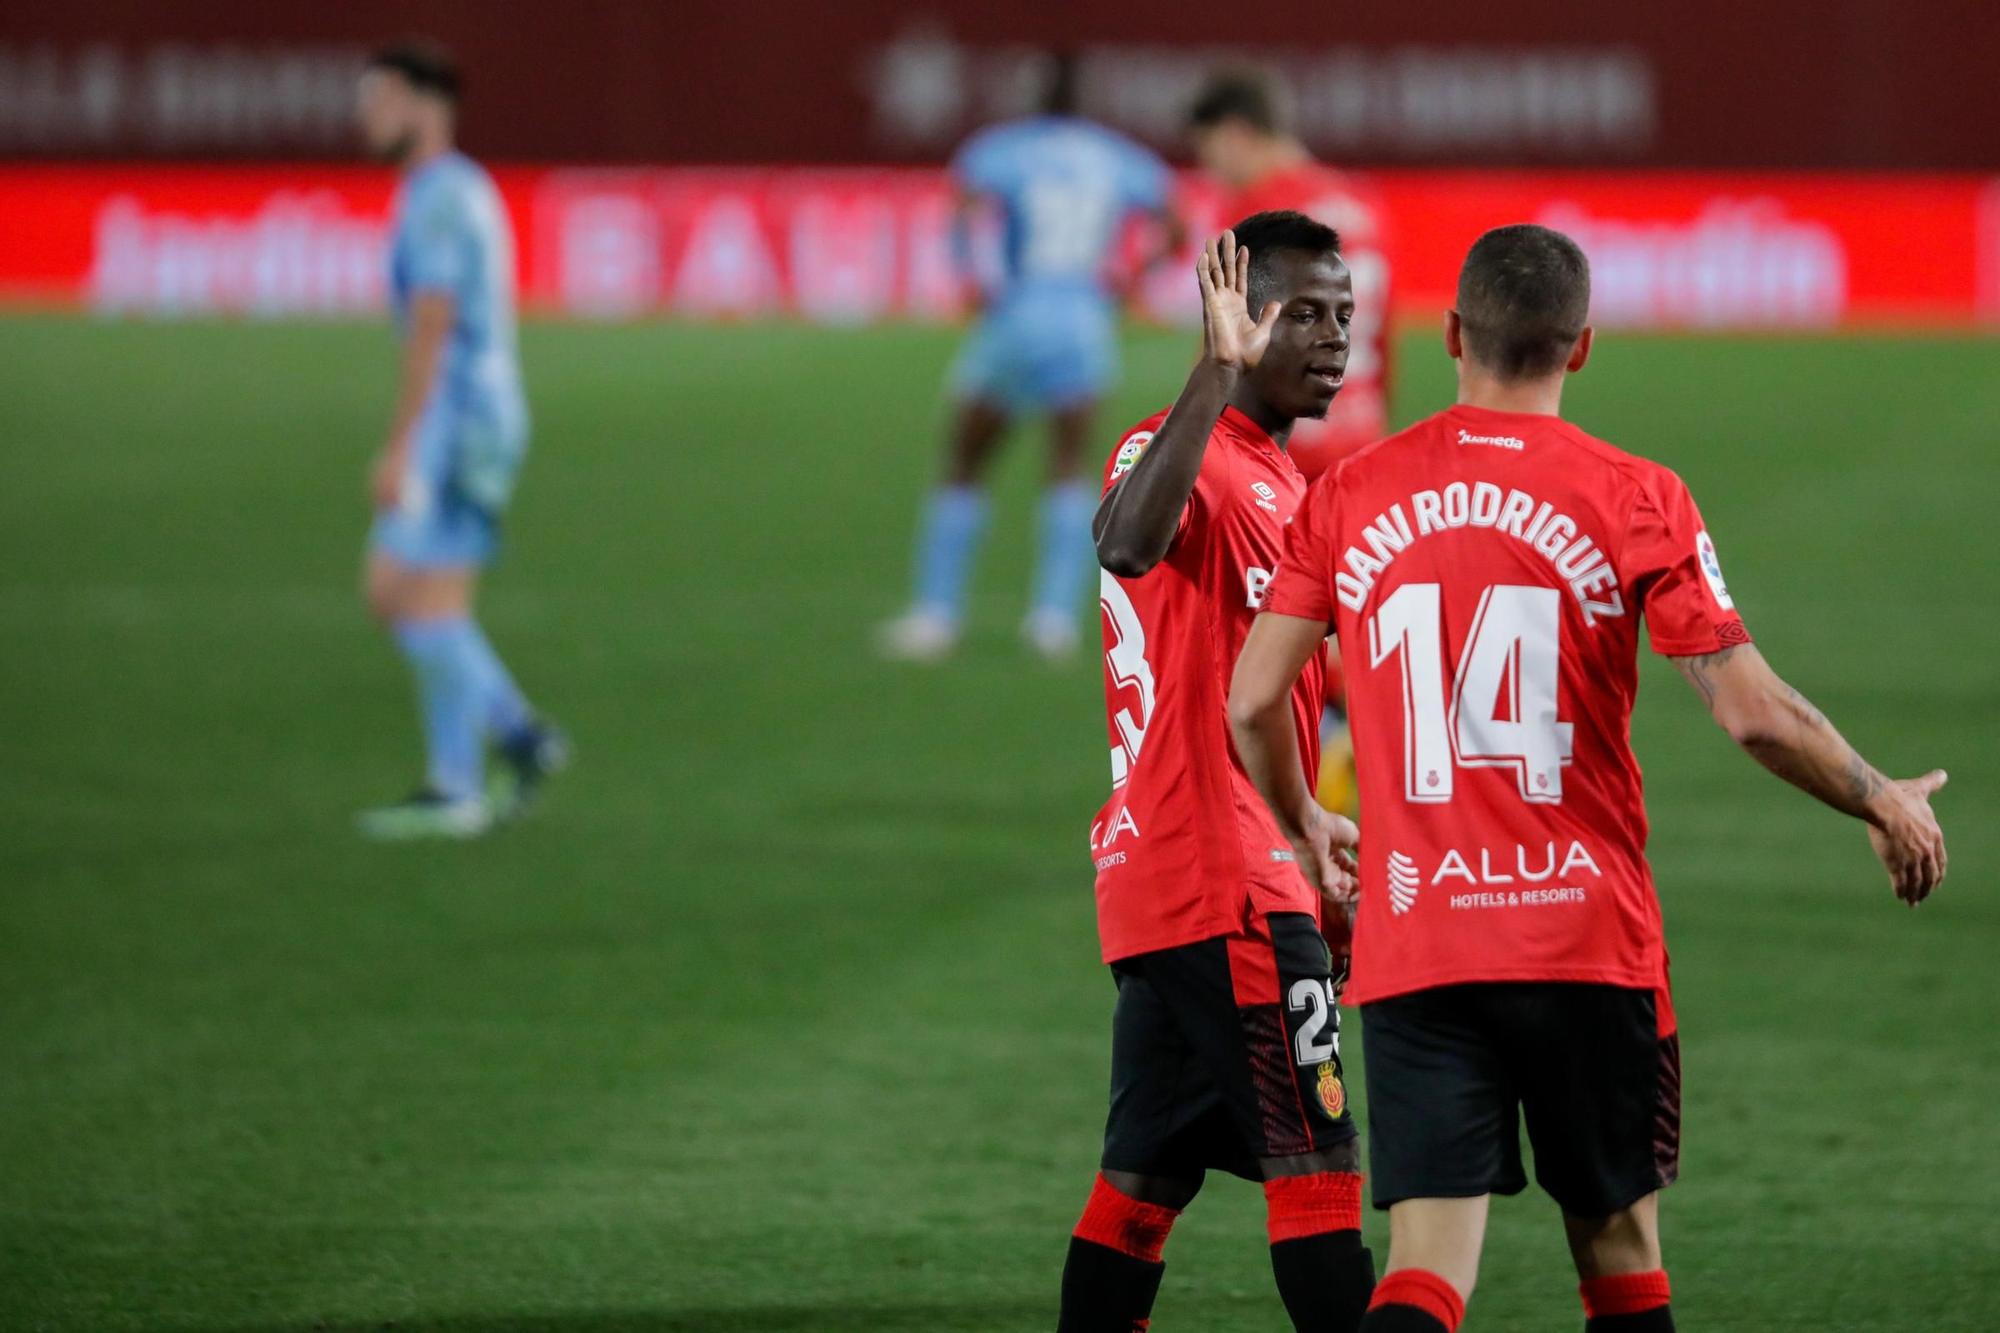 Amath coloca líder al Mallorca en el descuento (1-0)